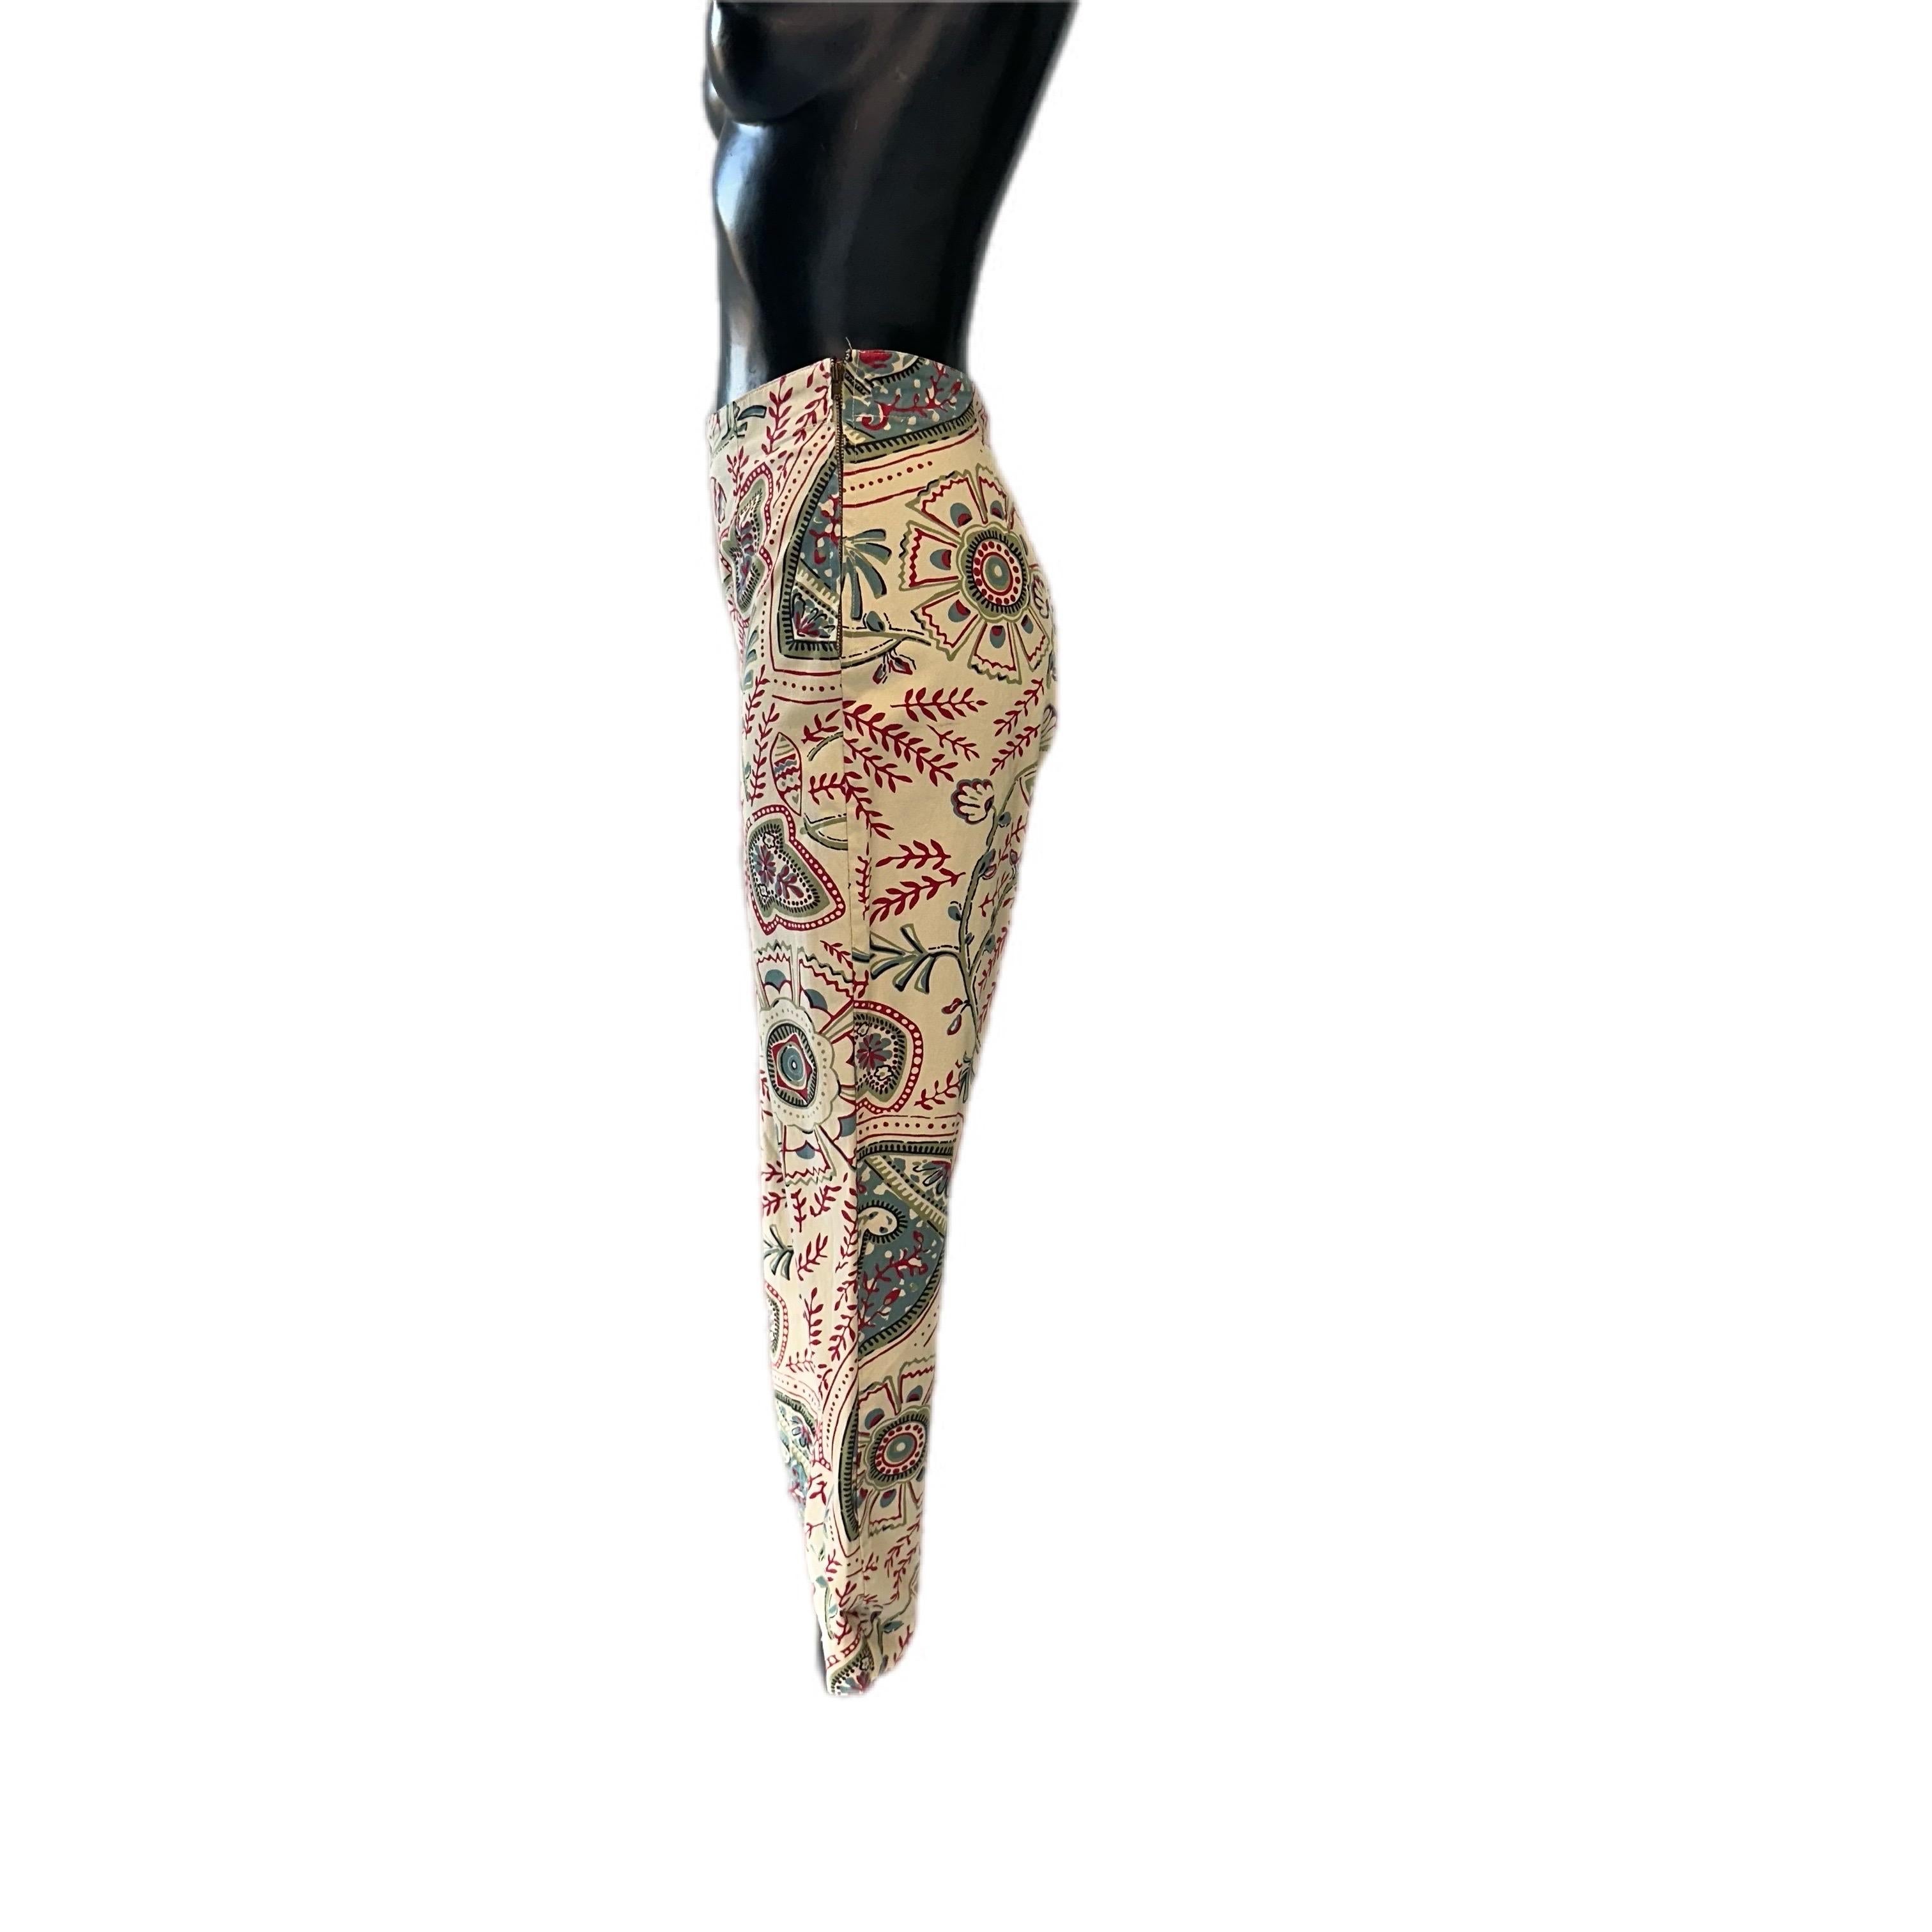 Pantalone in cotone Valentino con elegante fantasia damascata
Taglia 28, Verschluss mit seitlicher Kernenergie
gute Bedingungen
Misure.
VITA 35cm
Cavallo 34cm
Fianchi 44cm
Lunghezza 90cm